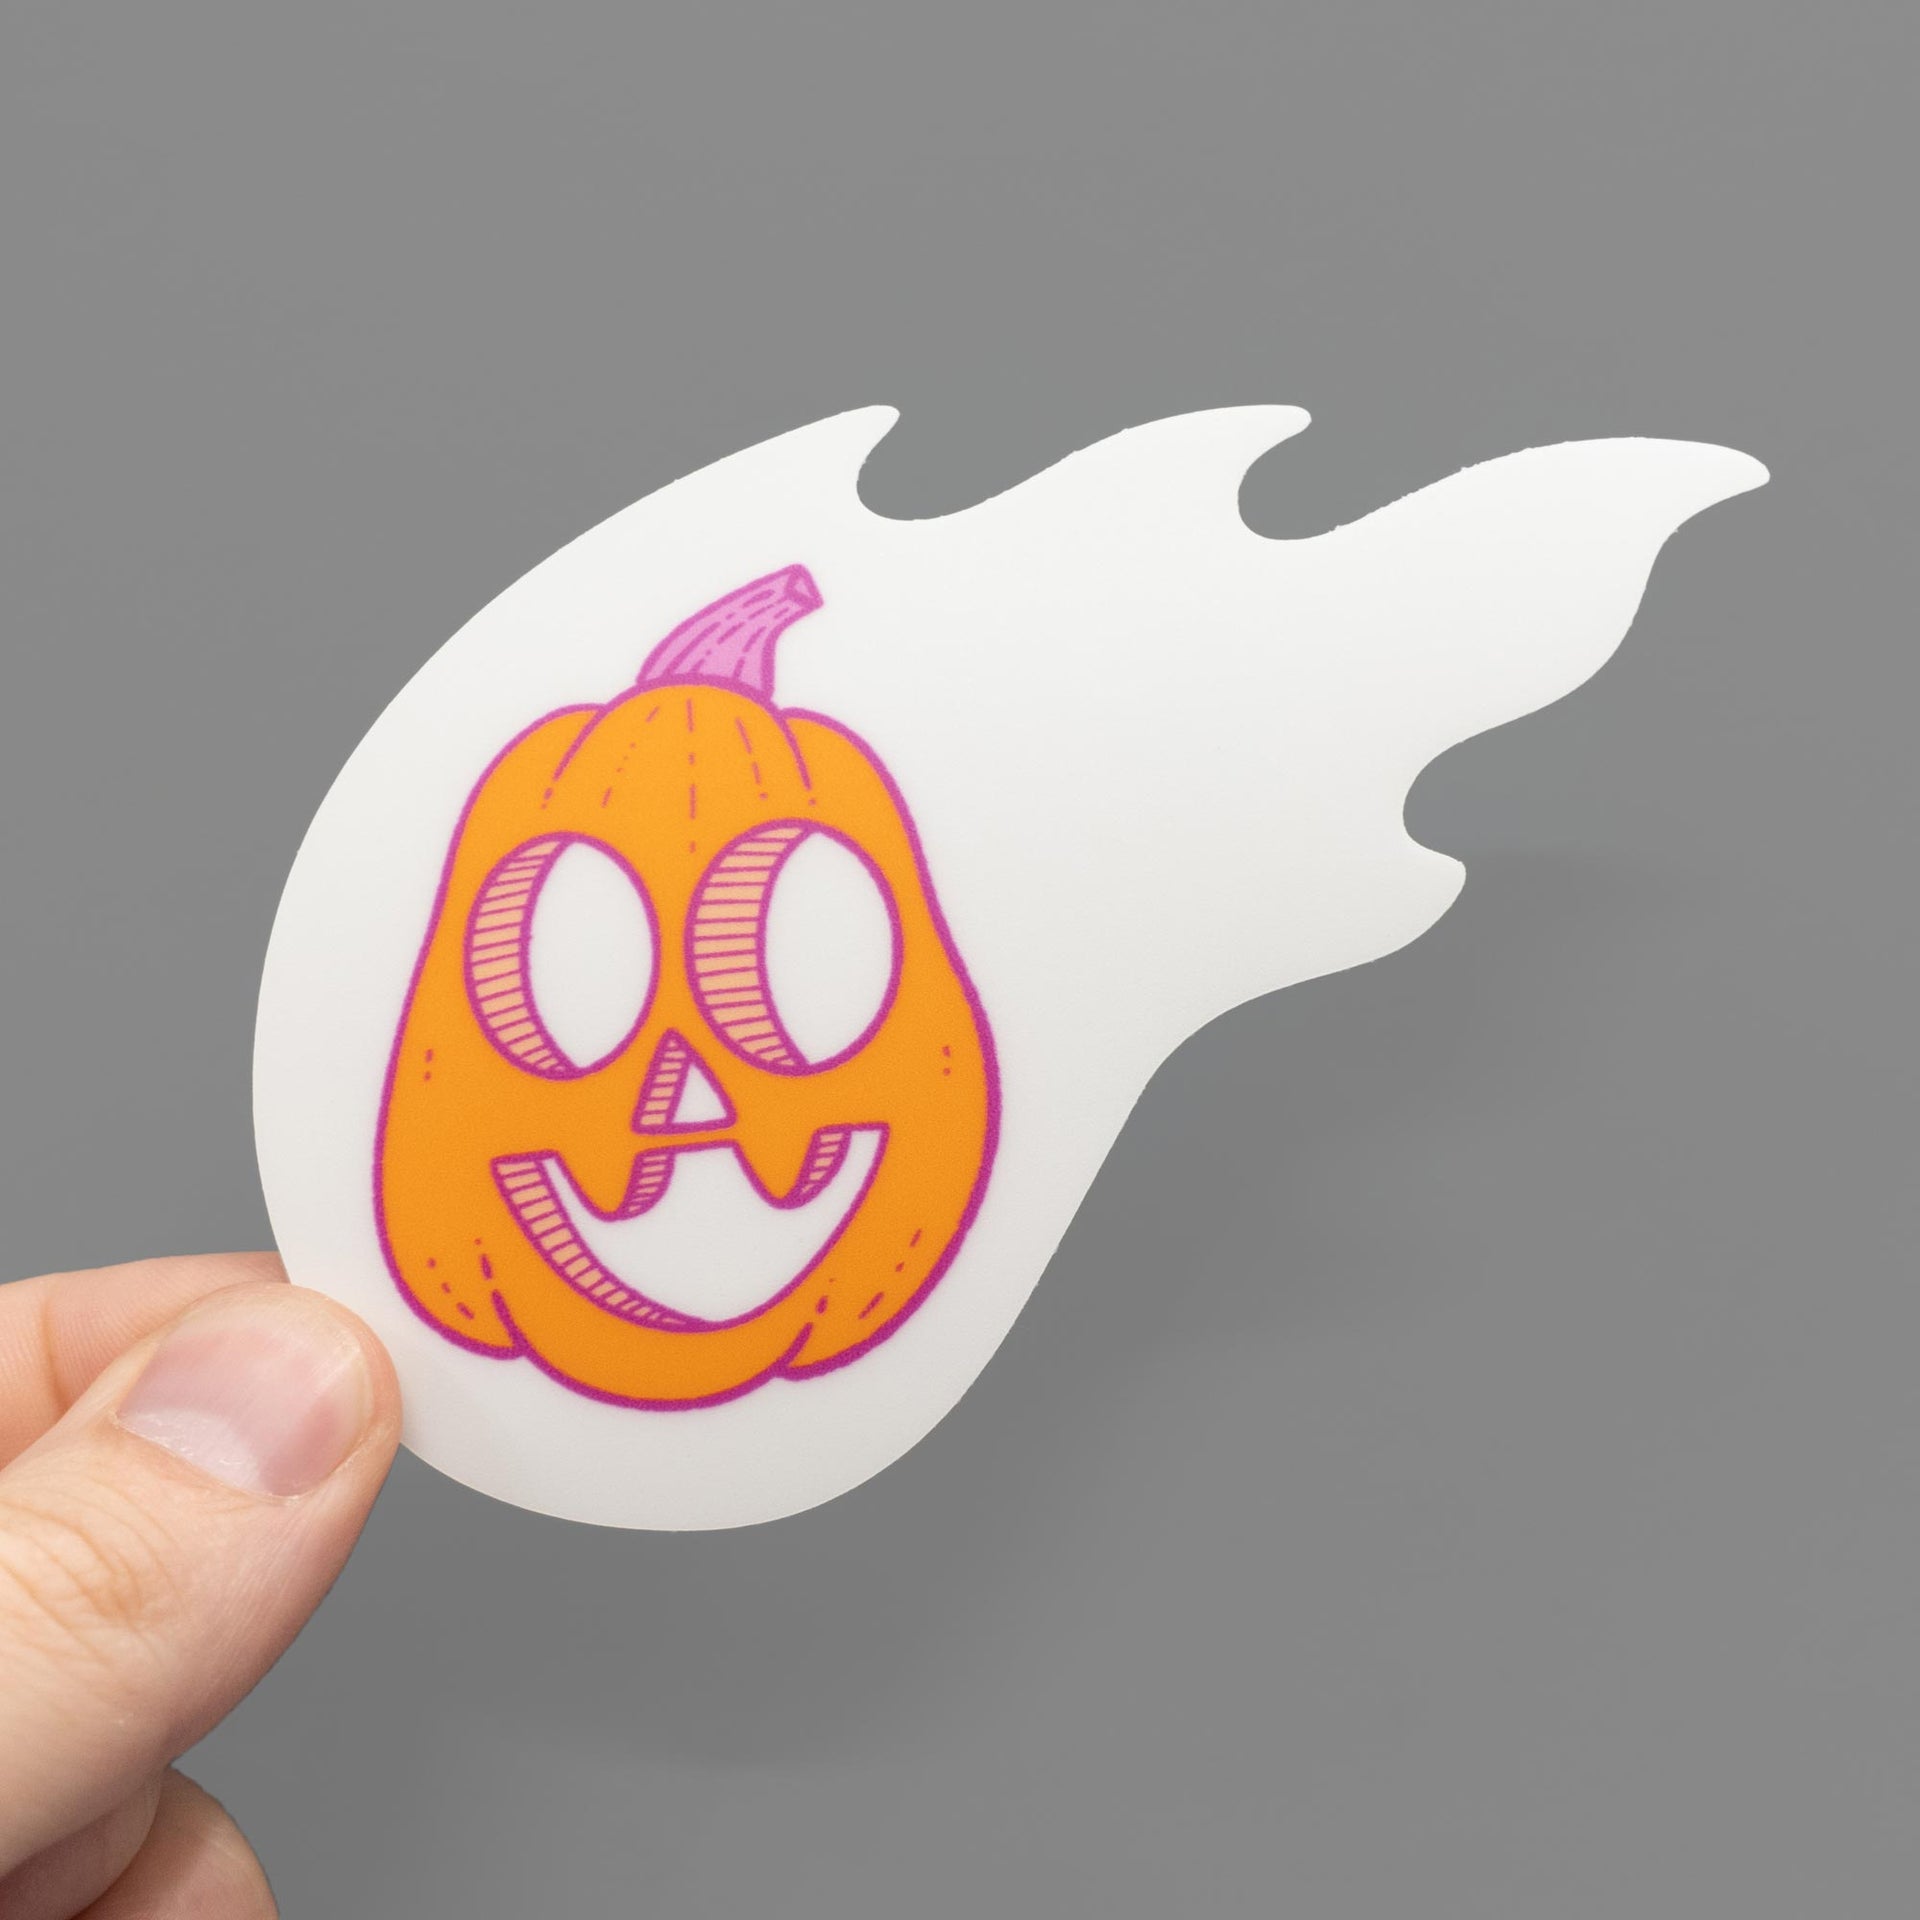 flaming pumpkin in glow in the dark fire sticker in hand